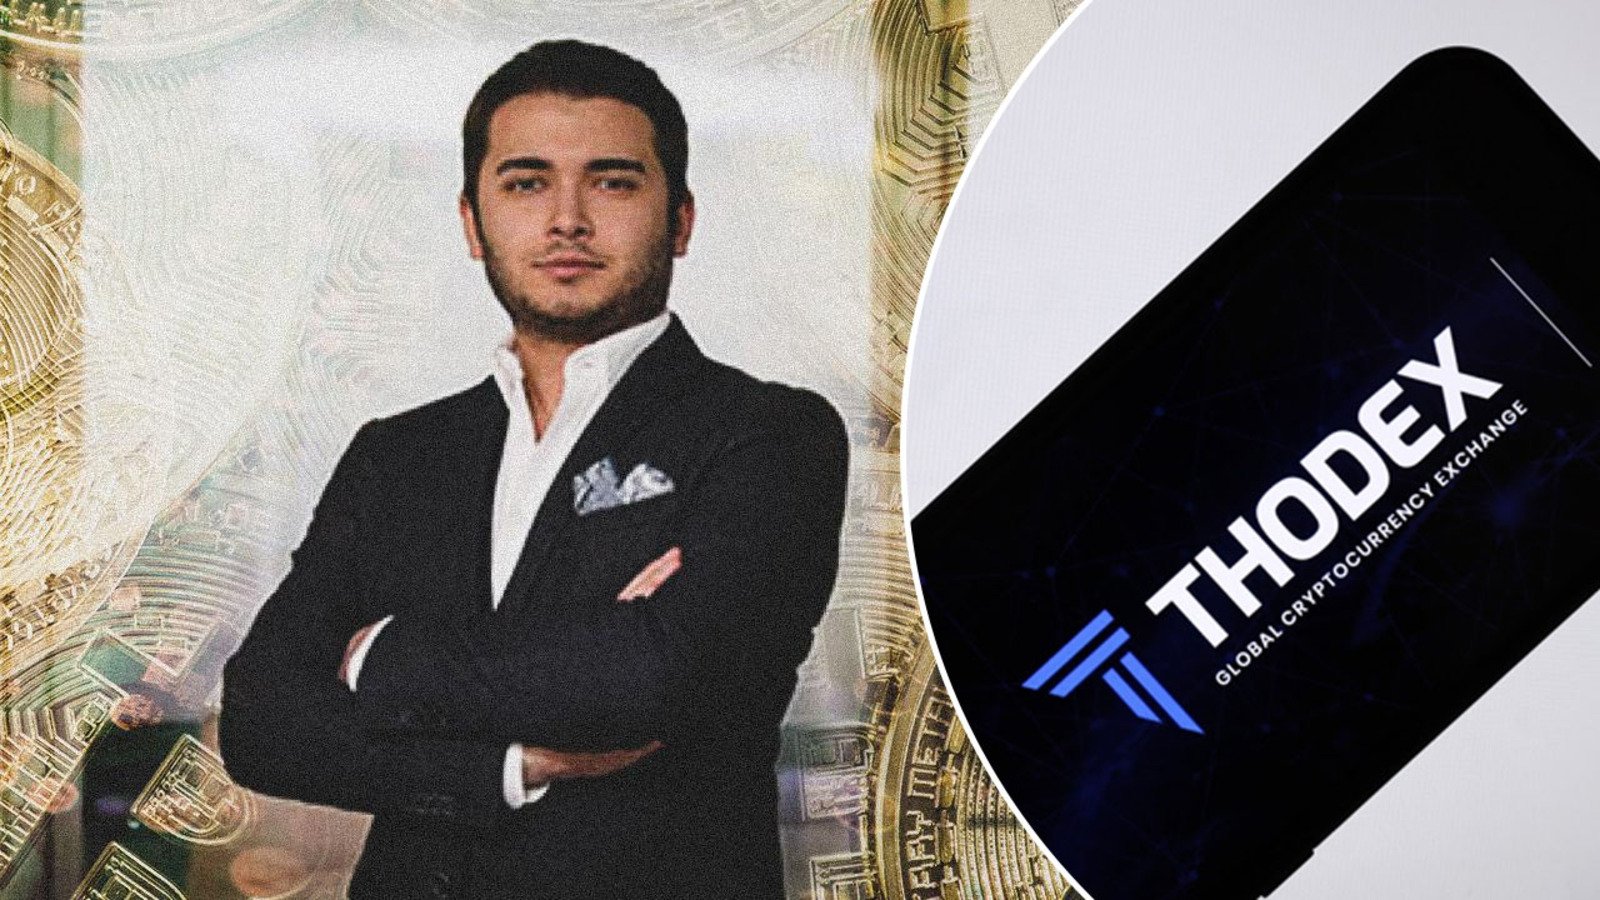 Thodex CEO'su Fatih Özer Tutuklandı ve Cezaevine Gönderildi